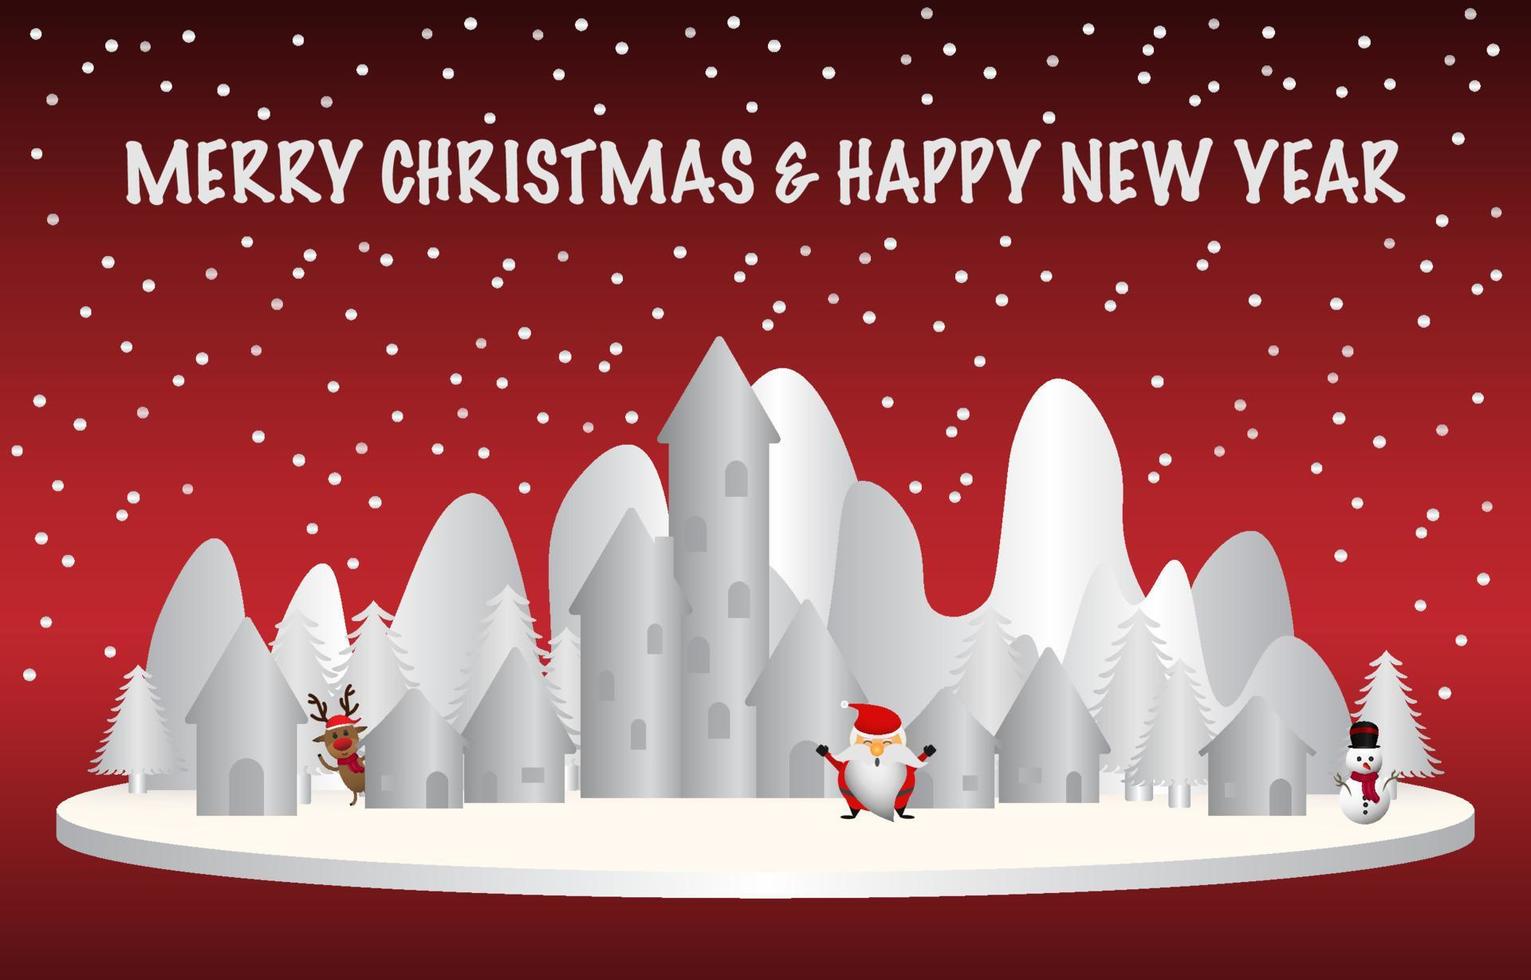 Feliz navidad y próspero año nuevo. santa claus, muñeco de nieve y renos se paran en el podio blanco. hay pueblos, pinos, montañas nevadas, texto navideño nevando y brillante sobre un fondo rojo. vector